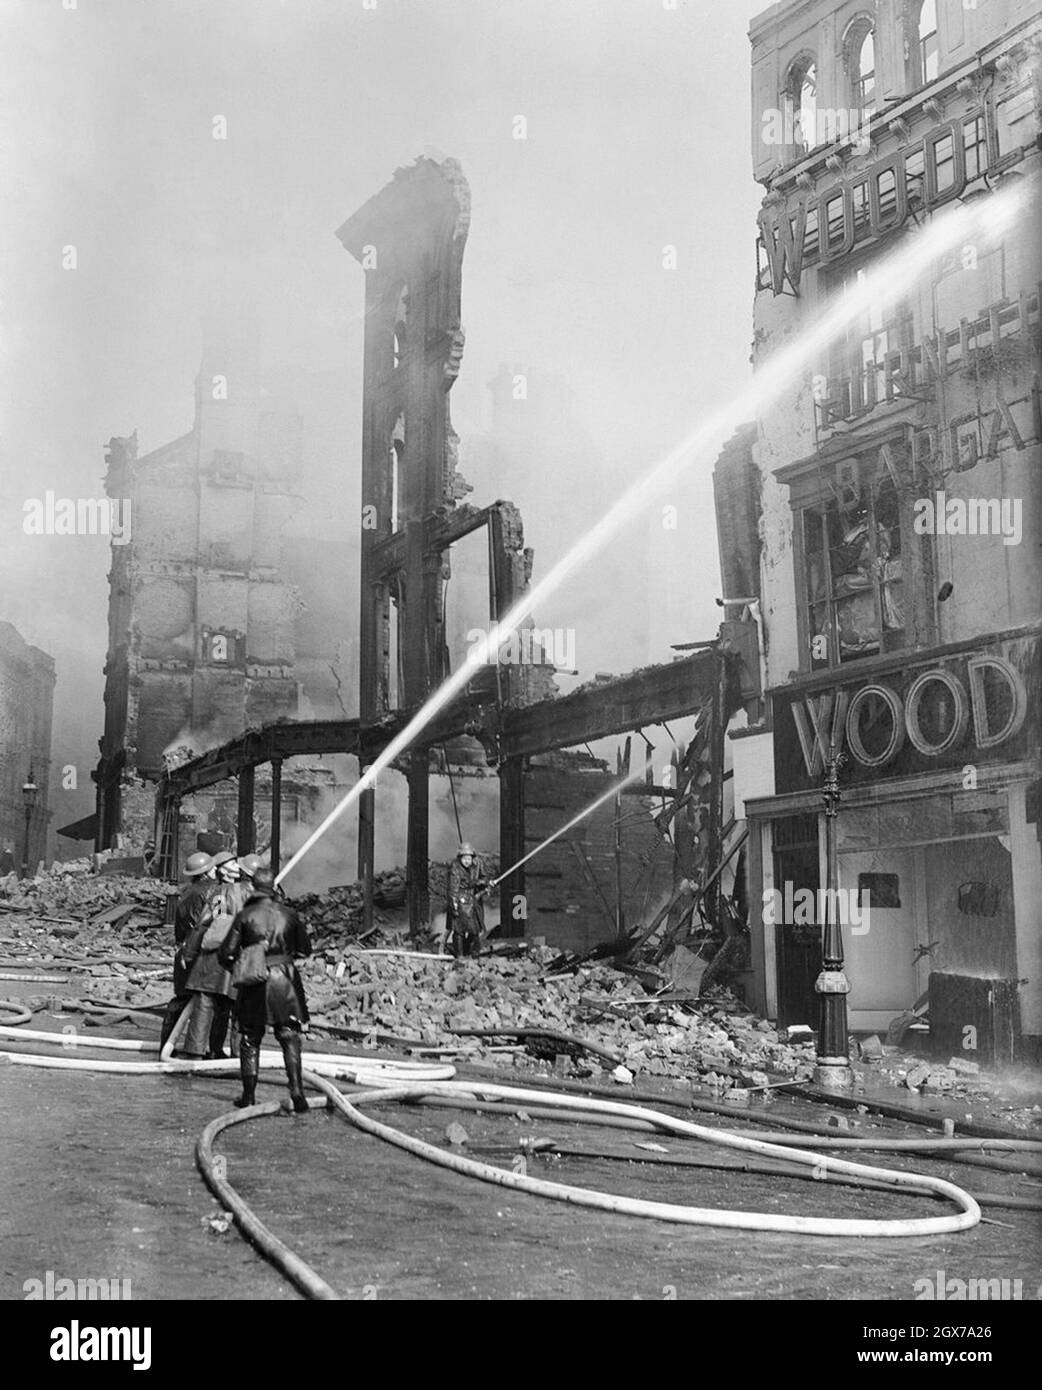 Des pompiers épargnent de l'eau sur les bâtiments en feu pendant le Blitz de Londres Banque D'Images